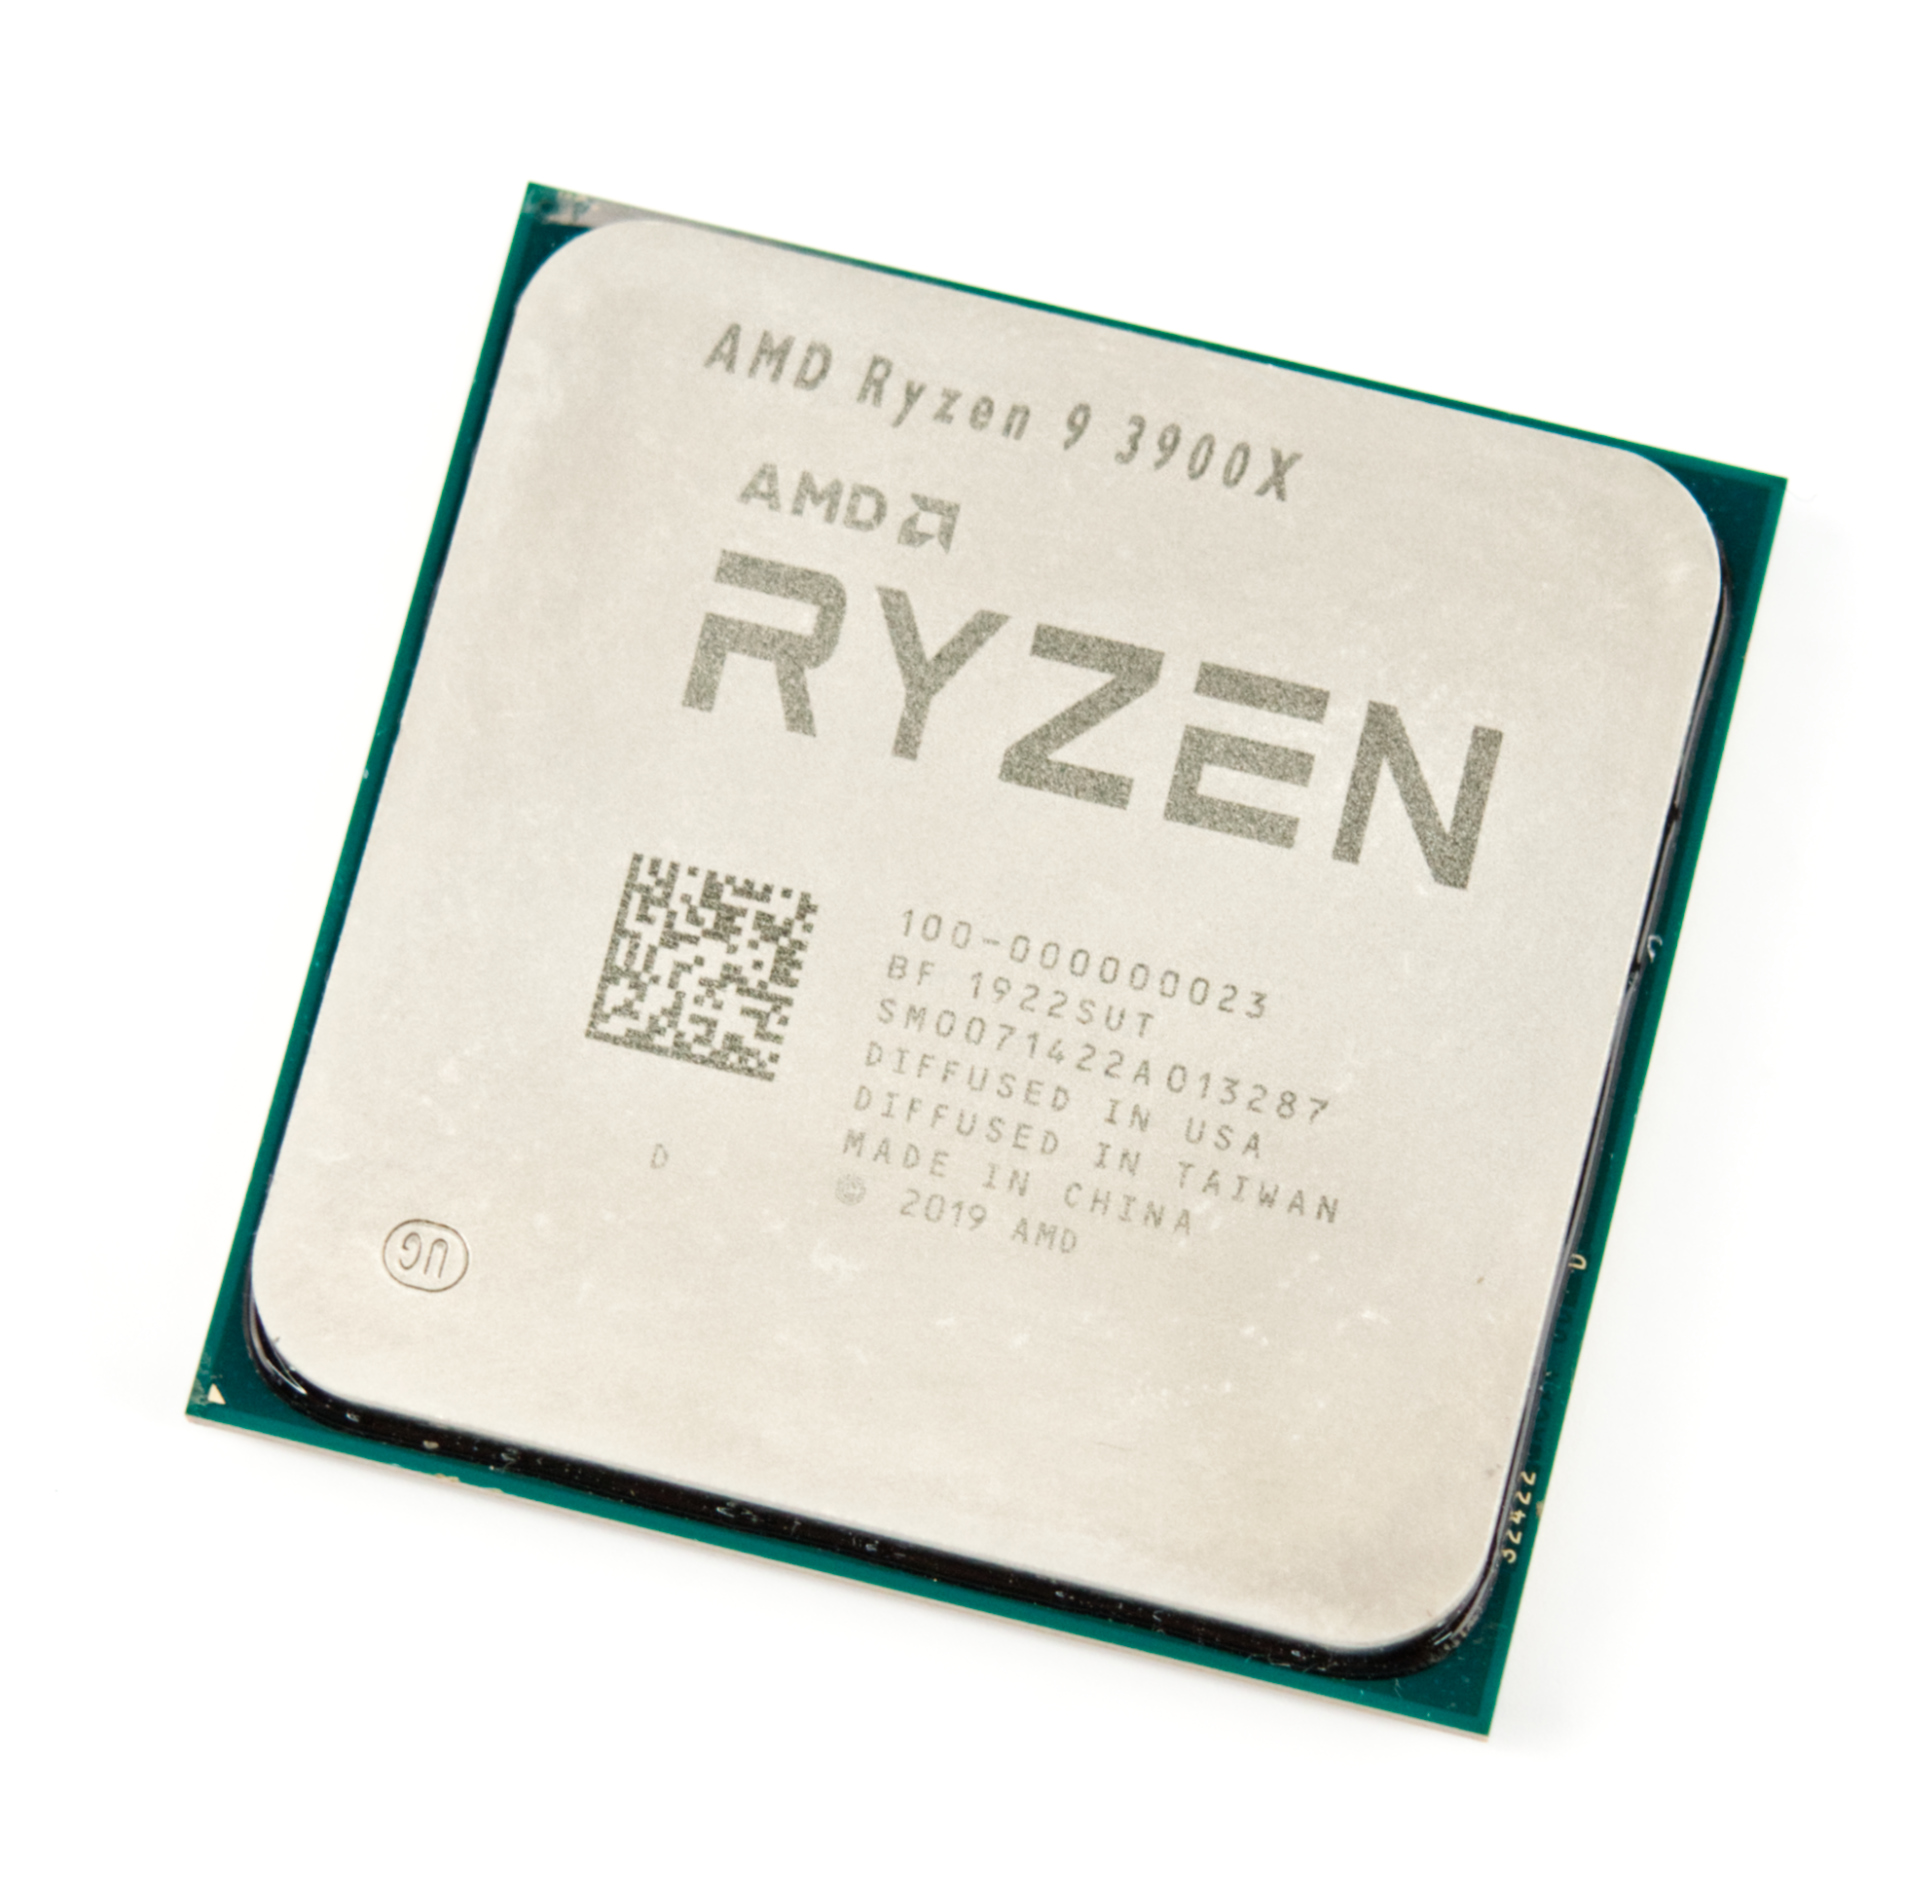 AMD Ryzen 9 3900 vs AMD Ryzen 9 3900X